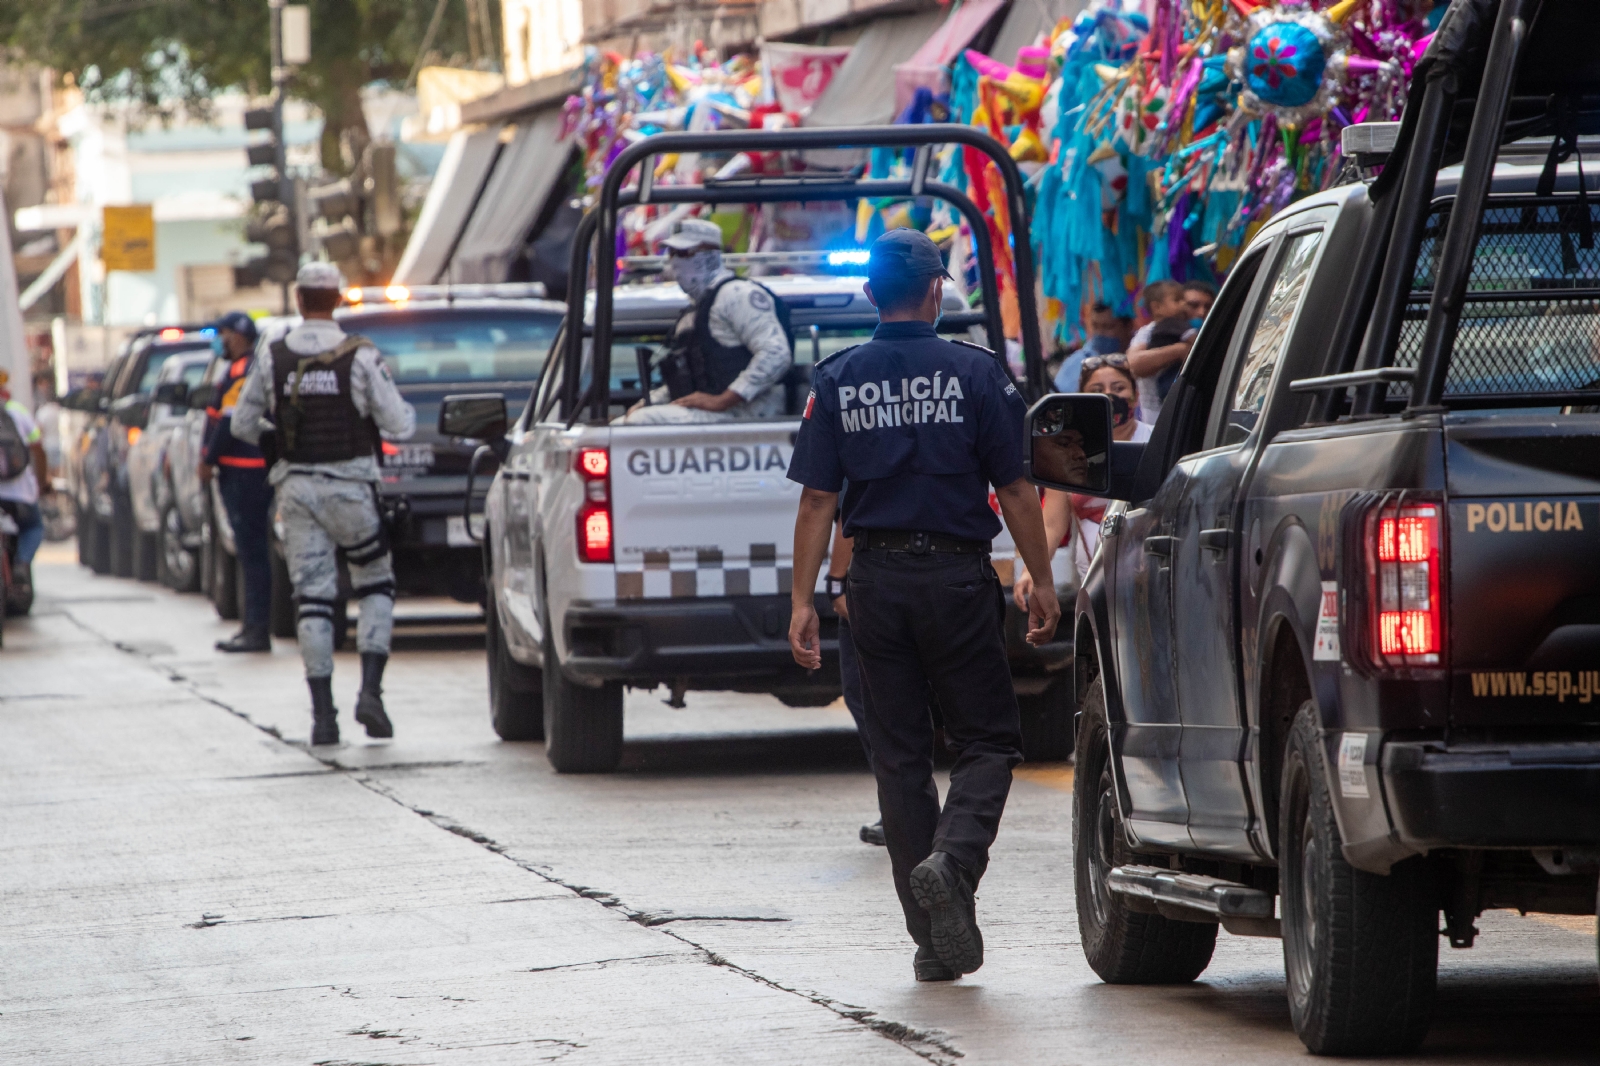 Guardia Nacional y SSP Yucatán 'blindarán' Mérida por festejos de Año Nuevo